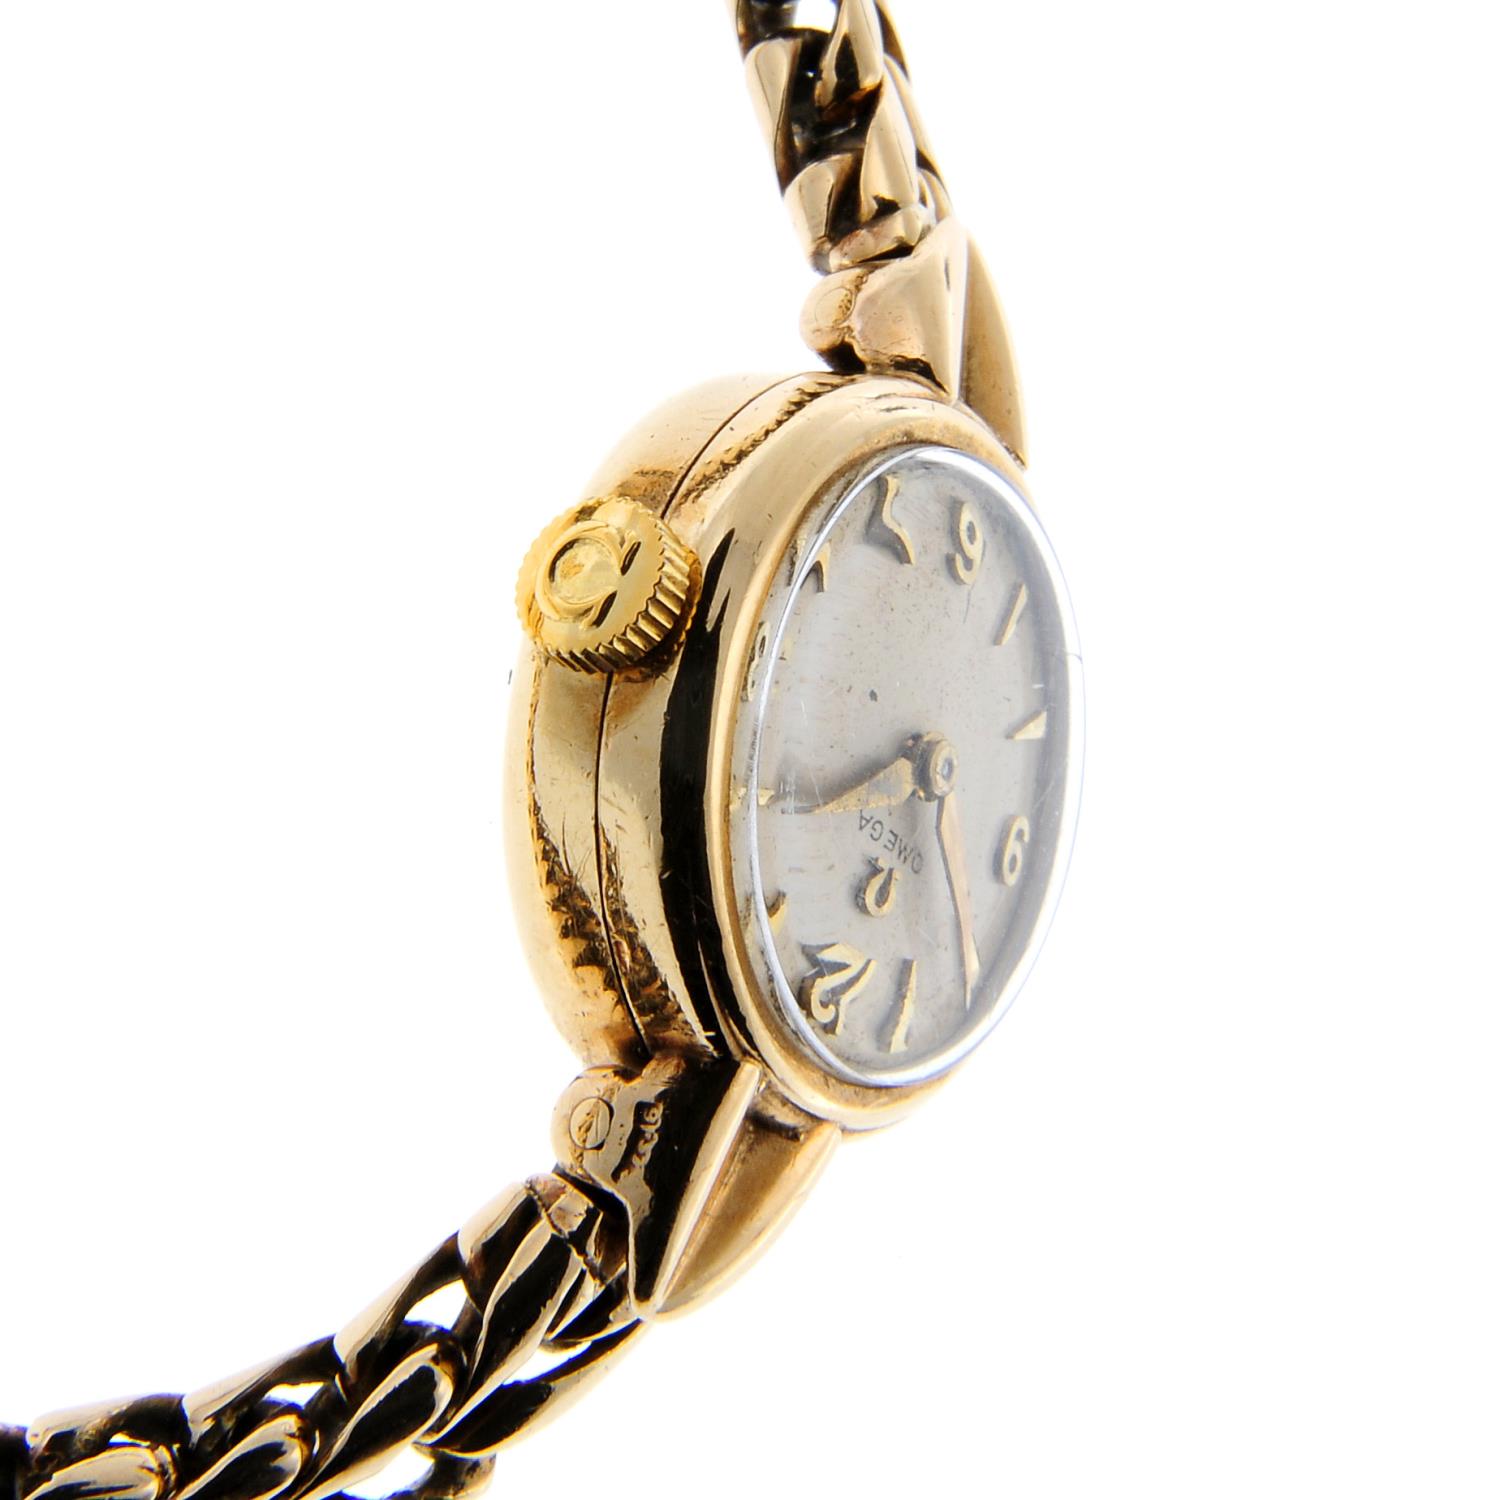 OMEGA - a bracelet watch. - Image 2 of 4